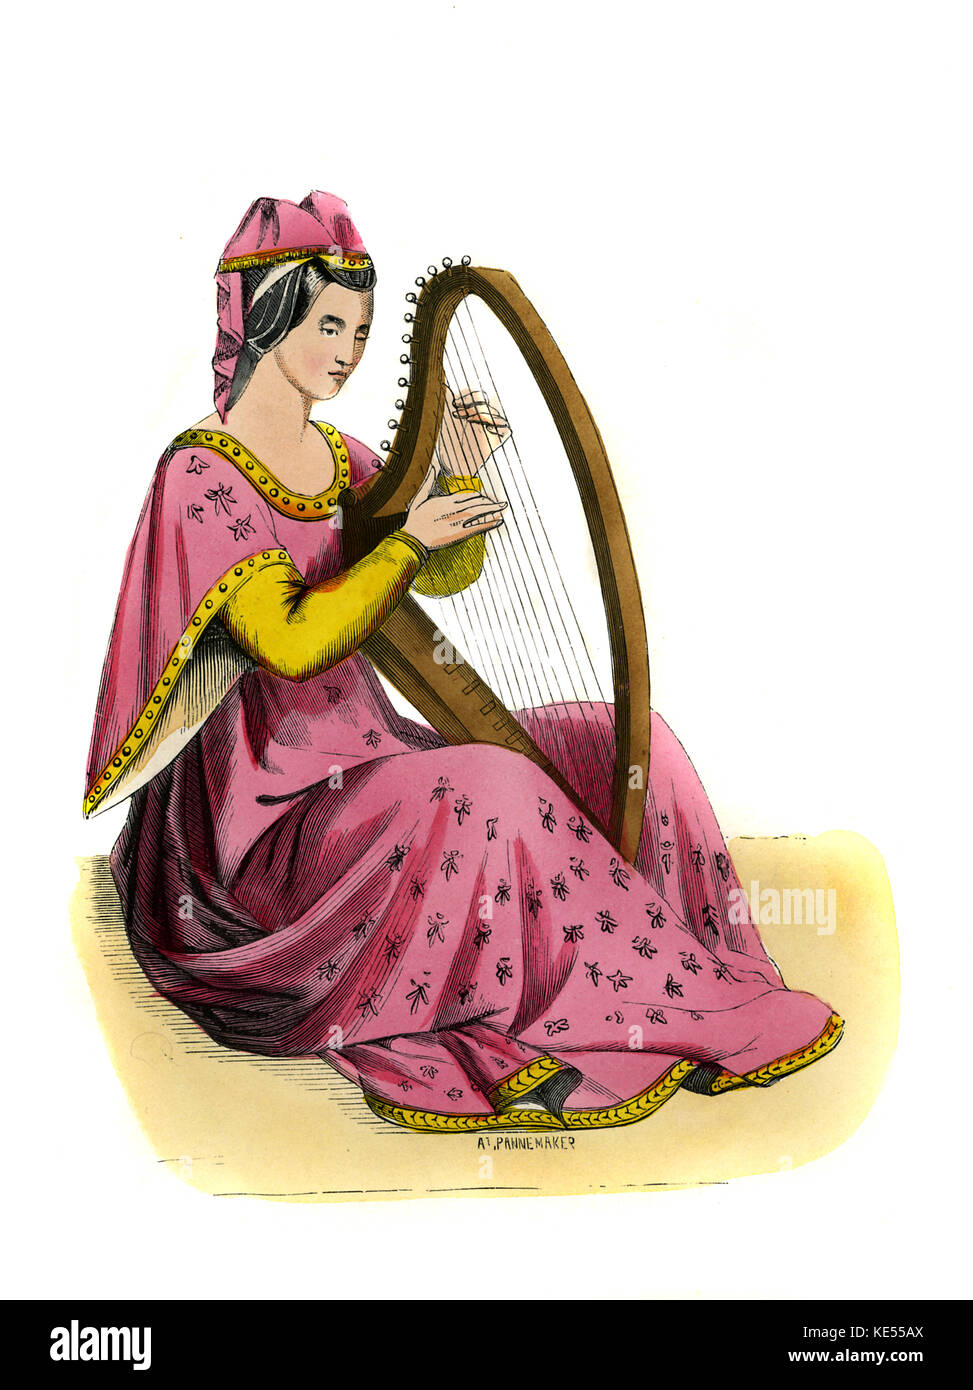 Jeune femme - costume féminin du 14ème siècle, illustré assis jouant de la harpe, portant une robe rose emboridered avec fleurs, pendentif suspendu de manches, et d'une guimpe. c. 1847, peinte à la main copie d'une peinture du 14ème siècle par Vanni. (Pannemaker) Banque D'Images